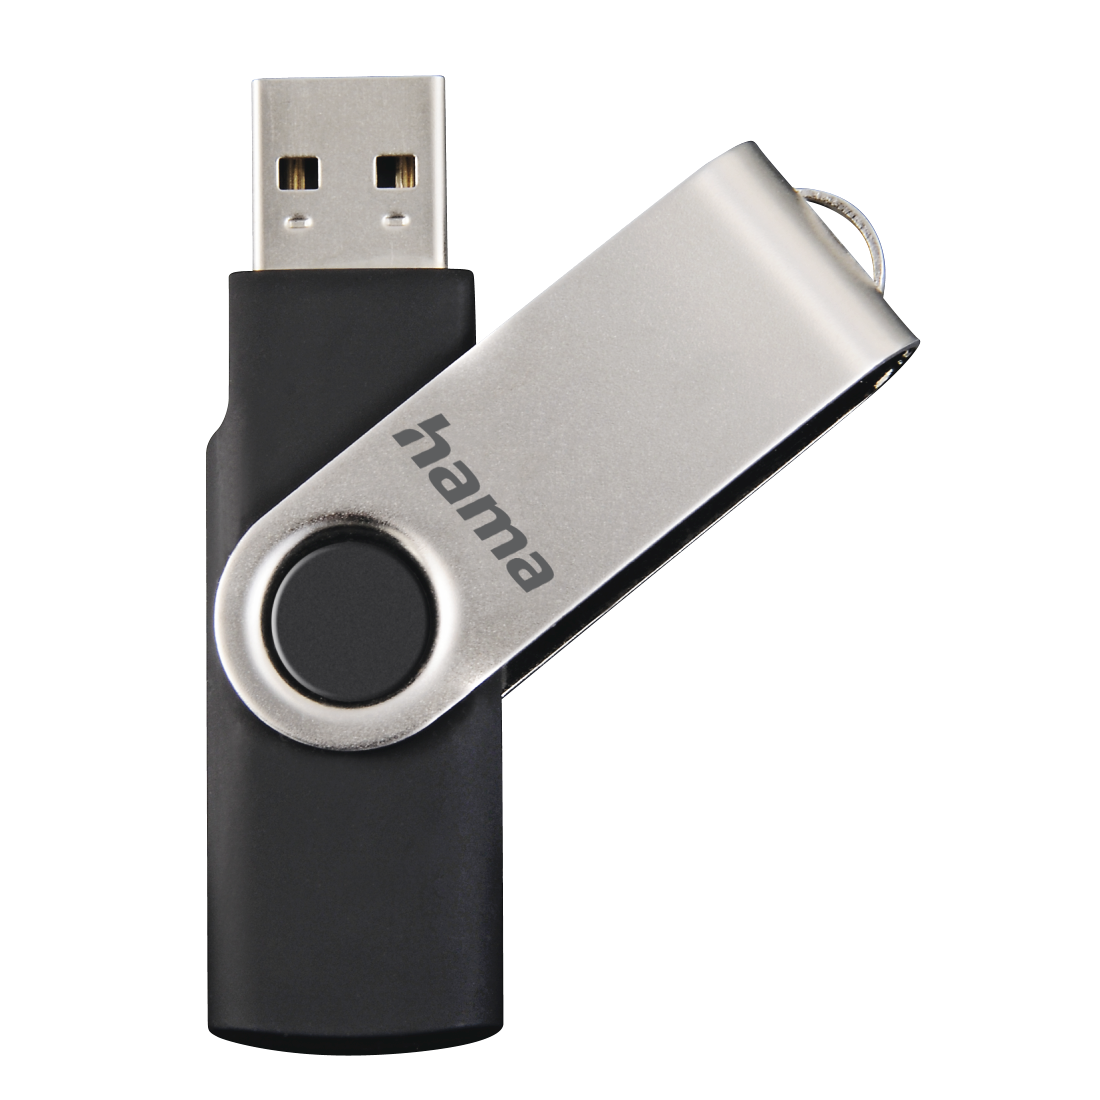 Hama USB-Stick 64 GB Speicherstick schwarz/silber USB 2.0, 10MB/s 